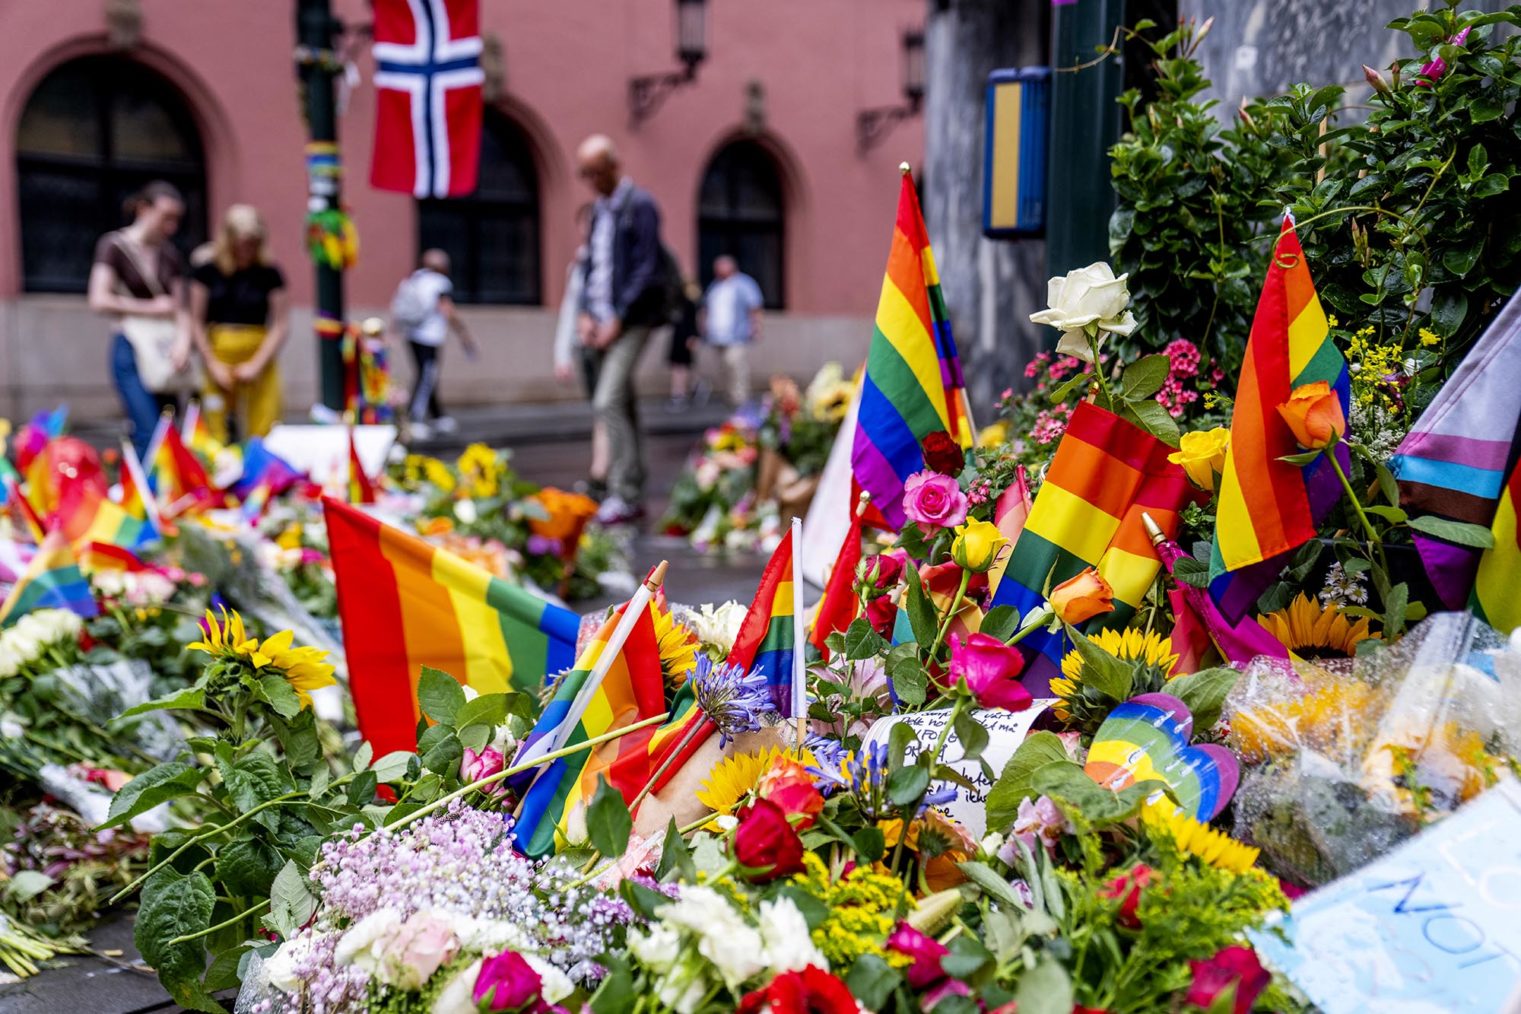 Bilde av store mengder blomster og regnbueflagg på gaten utenfor puben.